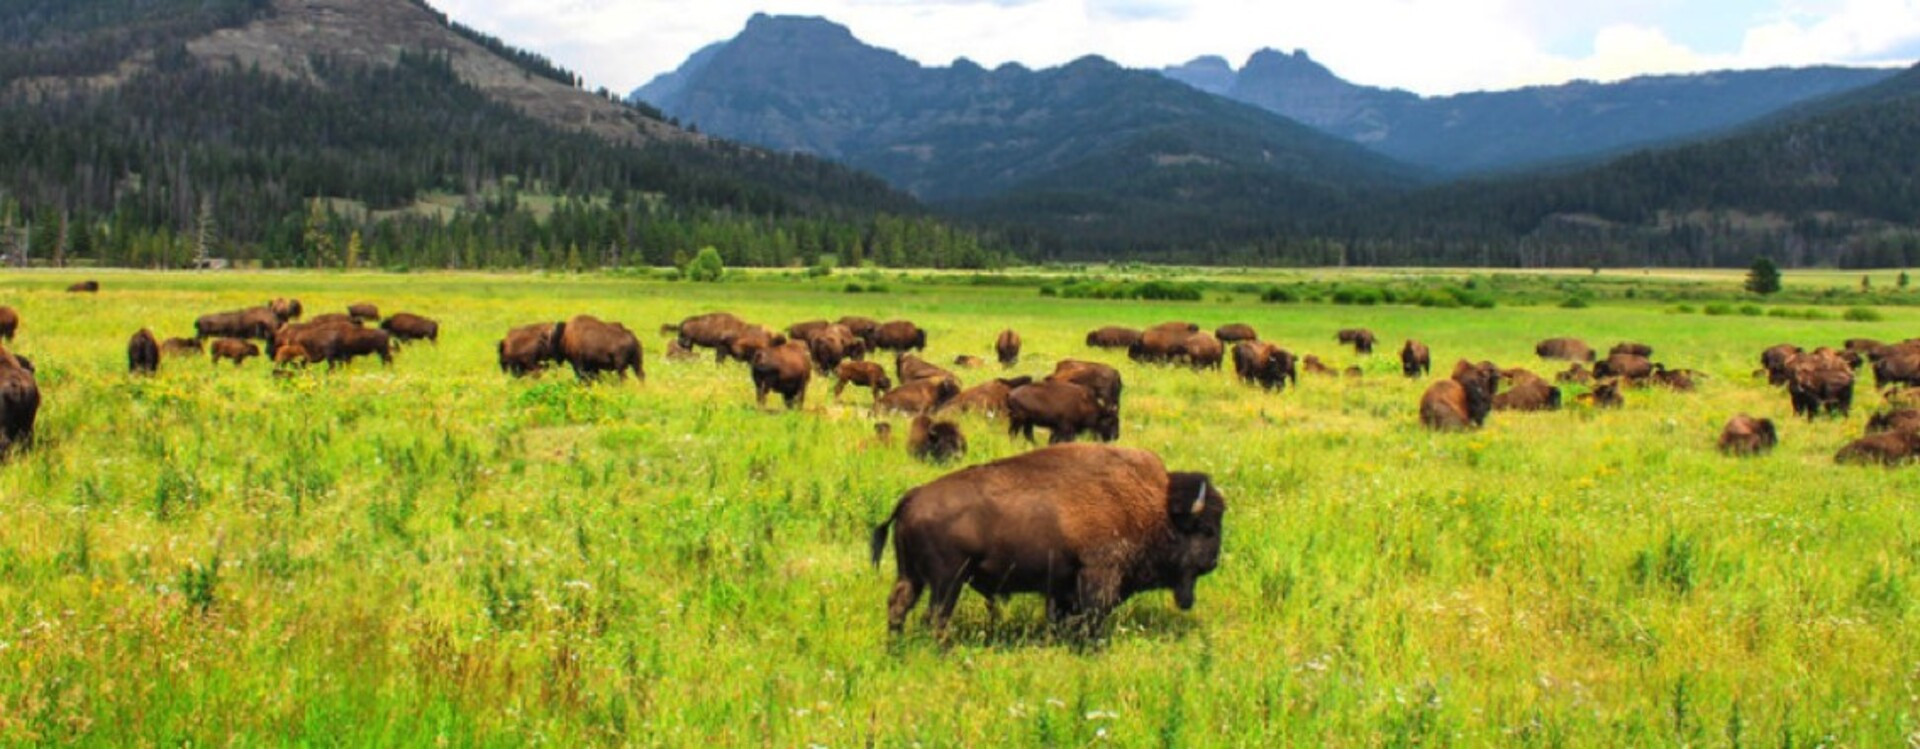 Die Geschichte des nordamerikanischen Bisons